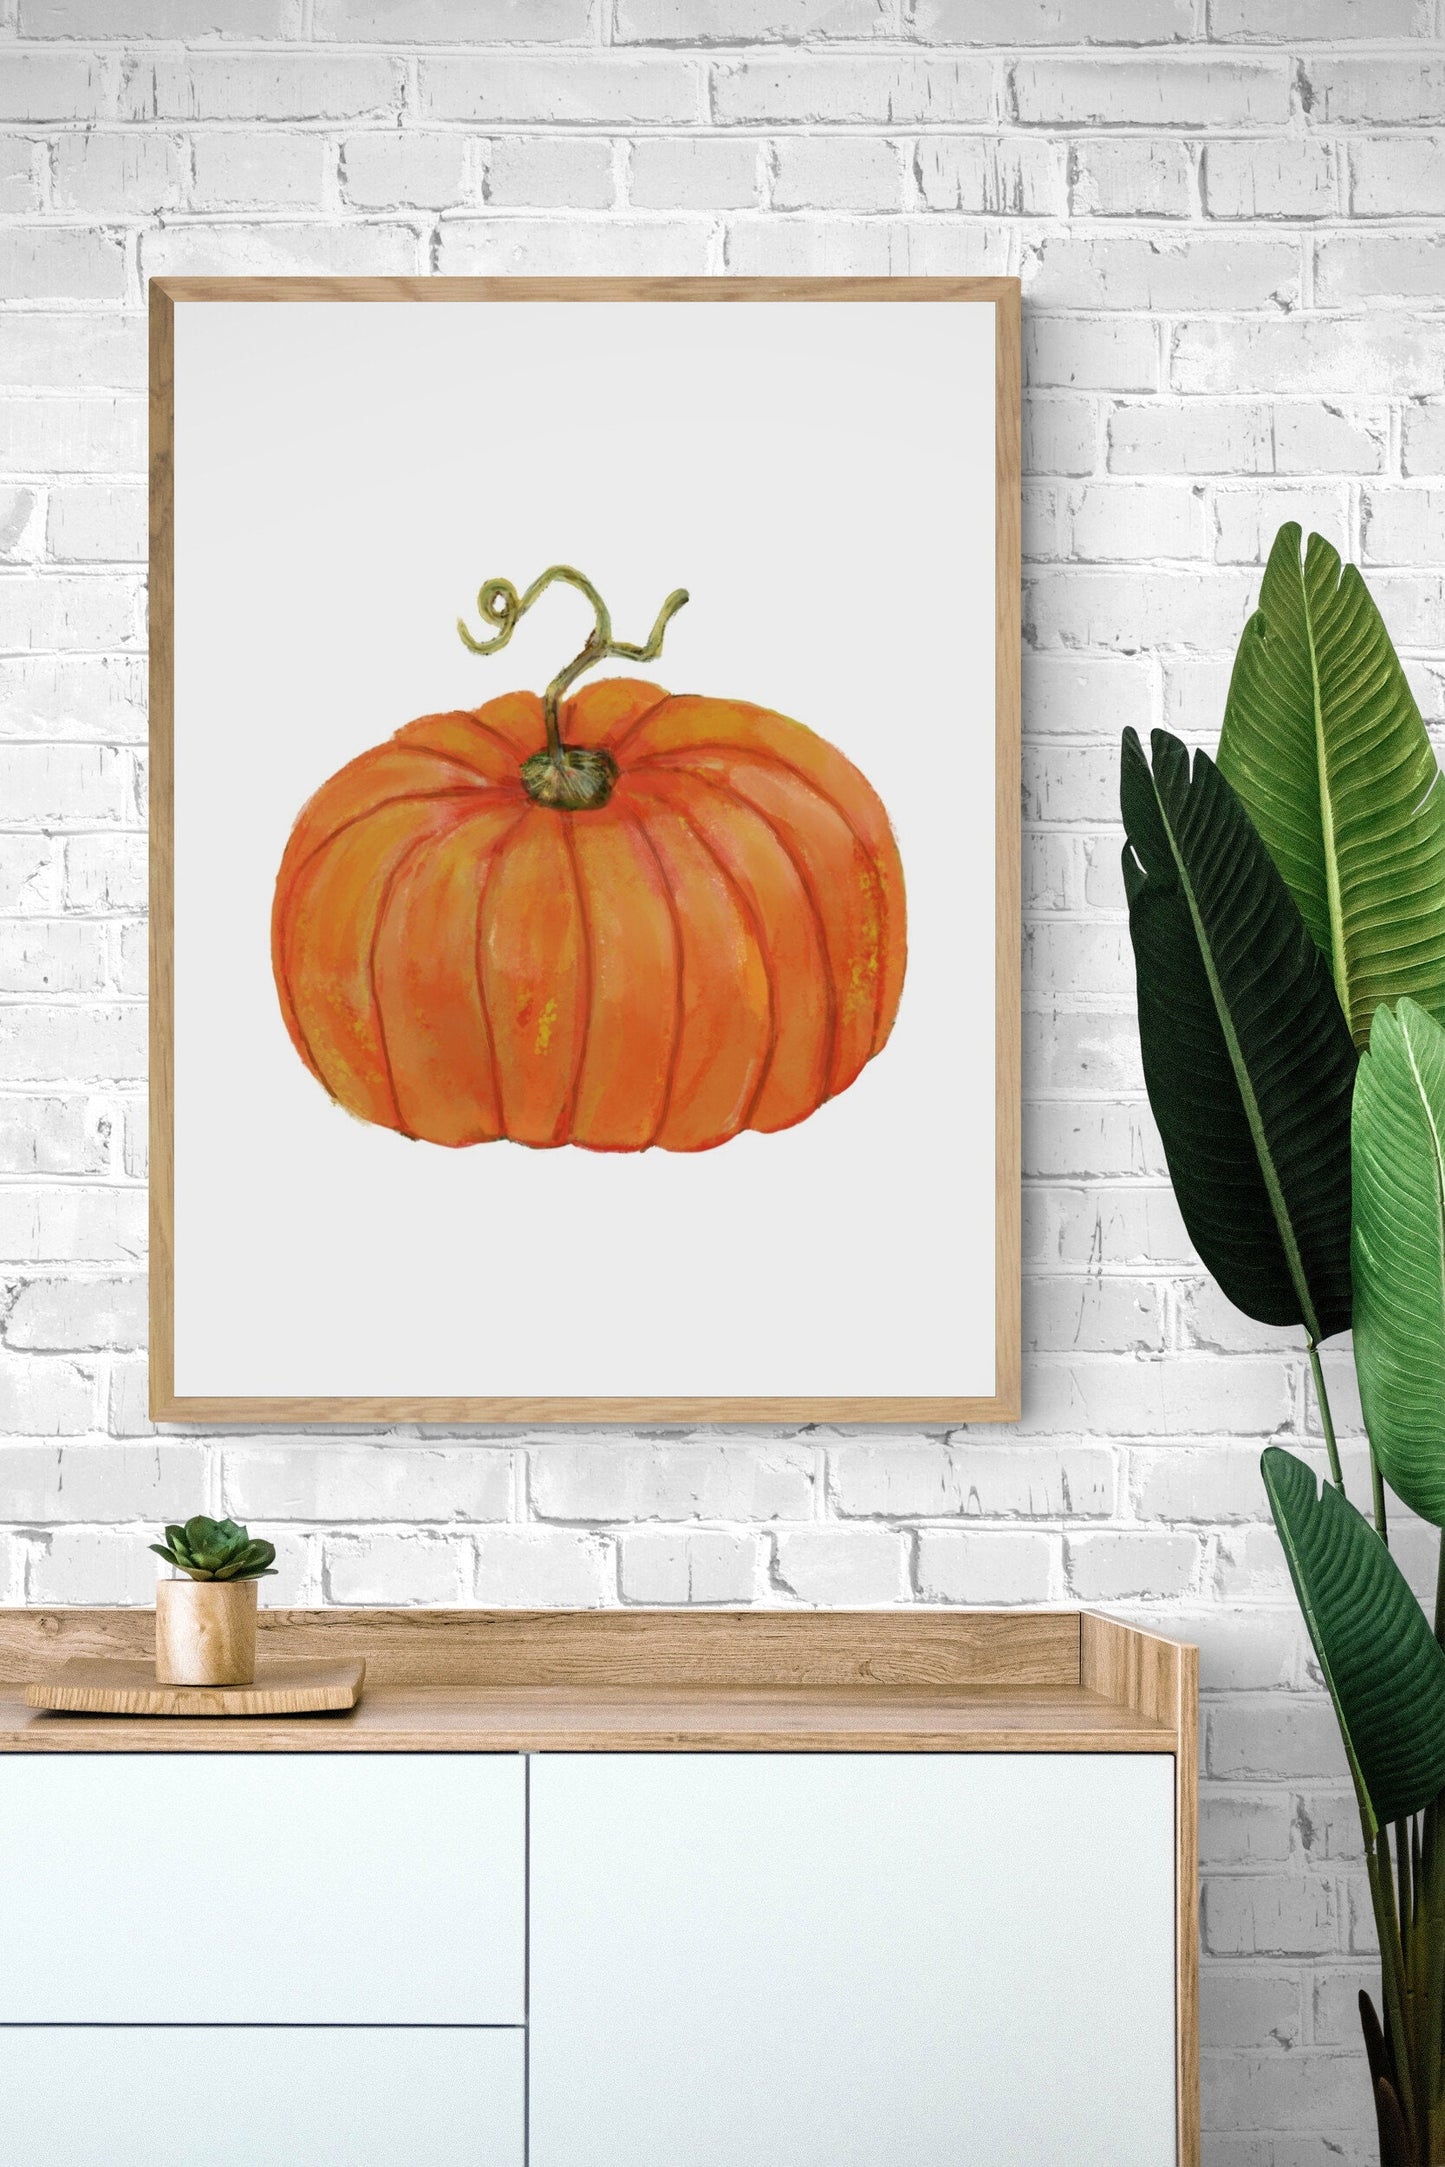 Pumpkin Print, Halloween Pumpkin Painting, Fall Decor, Living Room Home Art, Holiday Wall Art, Orange Pumpkin Illustration, Autumn Wall Art